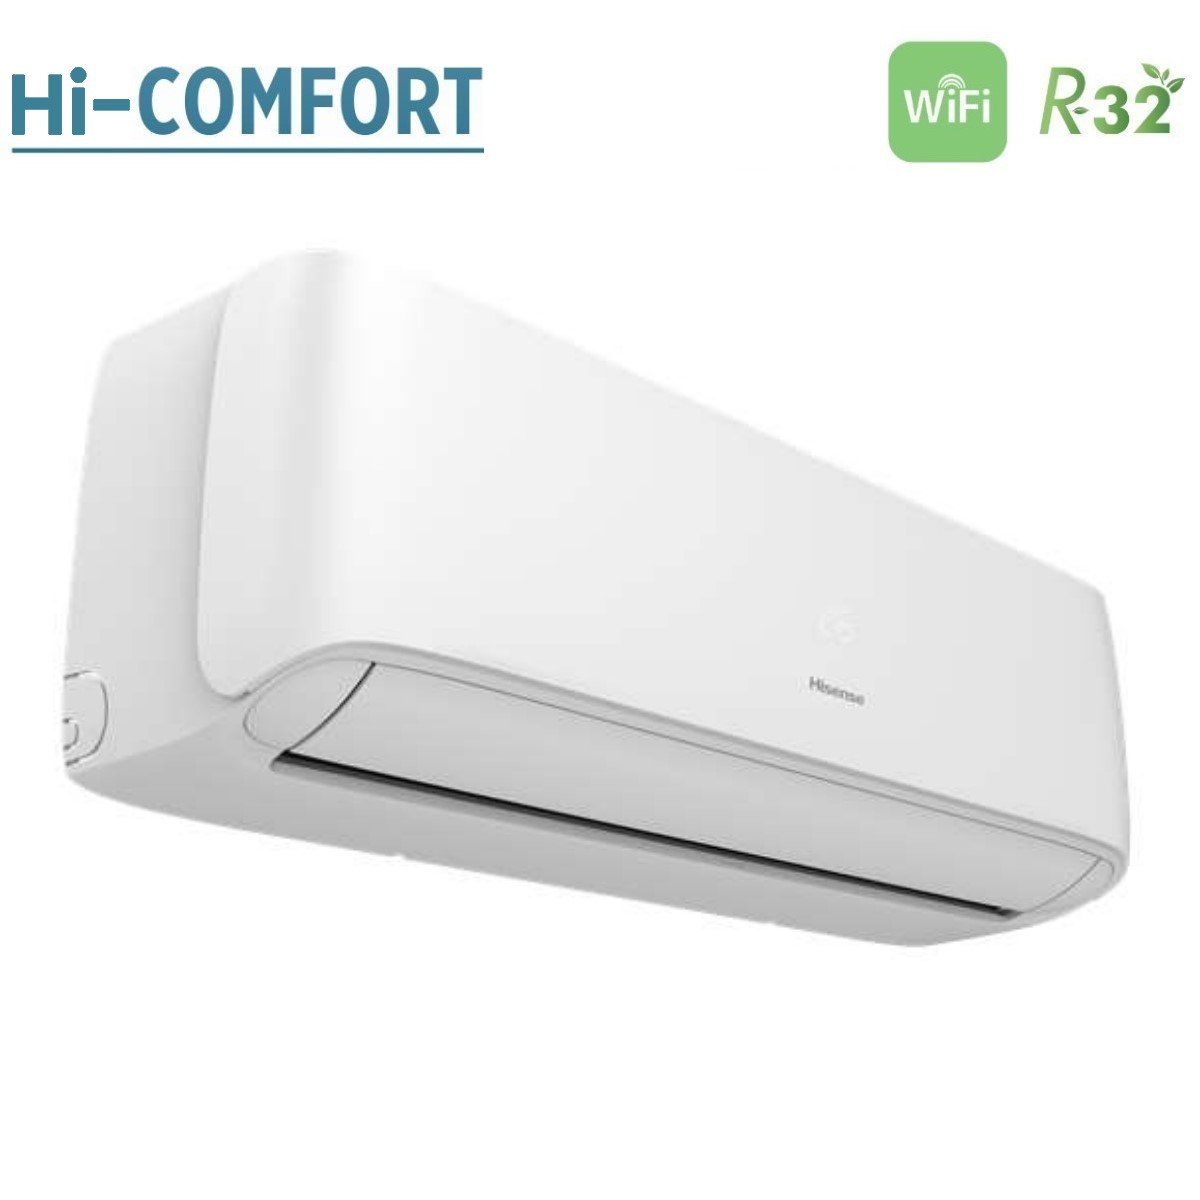 immagine-3-hisense-climatizzatore-condizionatore-hisense-dual-split-inverter-serie-hi-comfort-77-con-2amw42u4rgc-r-32-wi-fi-integrato-70007000-novita